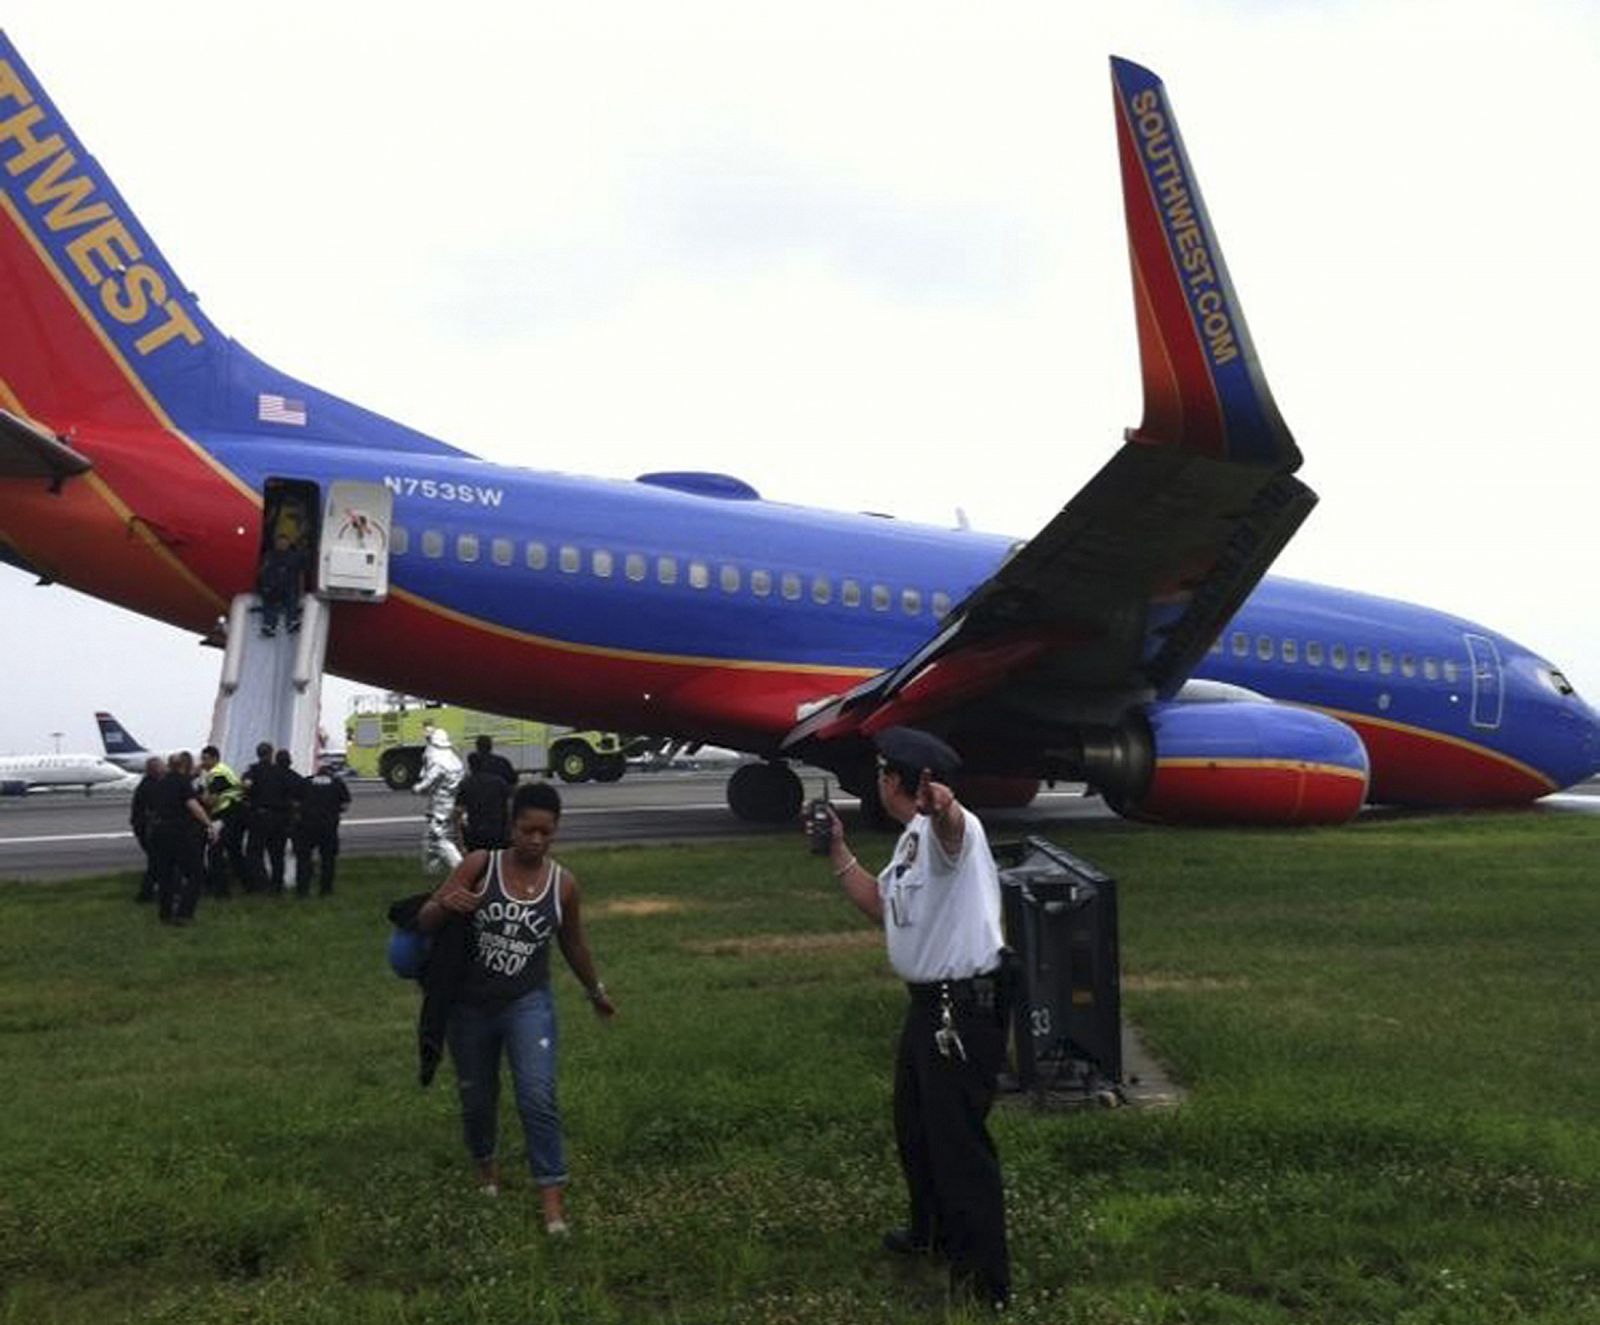 El avión accidentado de la compañía Southwest Airlines se apoya sobre la pista la pista mientras los pasajeros son desembarcados, en el aeropuerto de La Guardia en Nueva York.